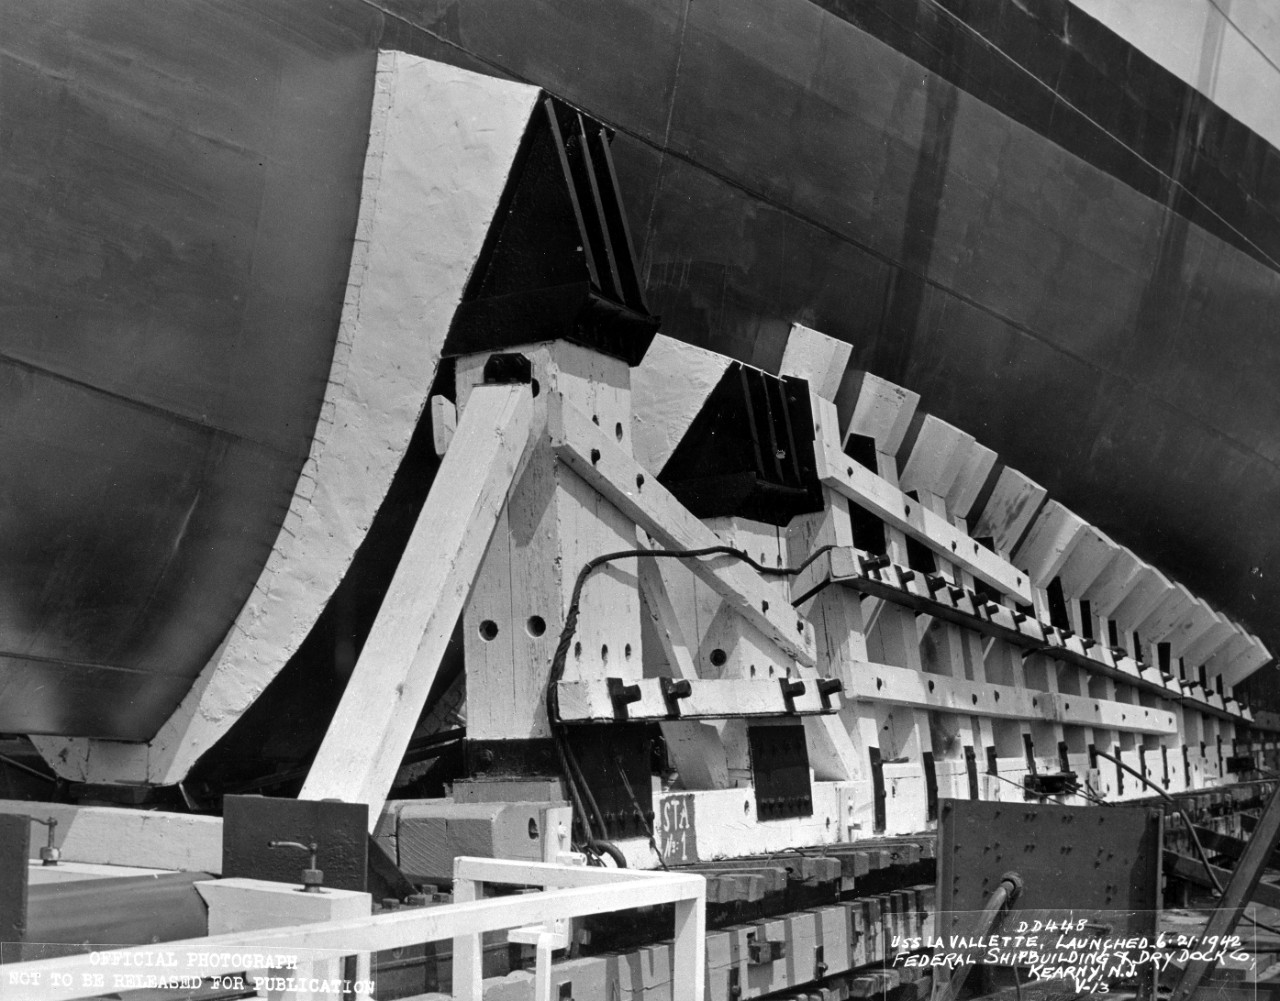 USS LaVallette (DD-448) - launched June 21, 1942, Federal Shipbuilding & Drydock Co., Kearny, NJ. 